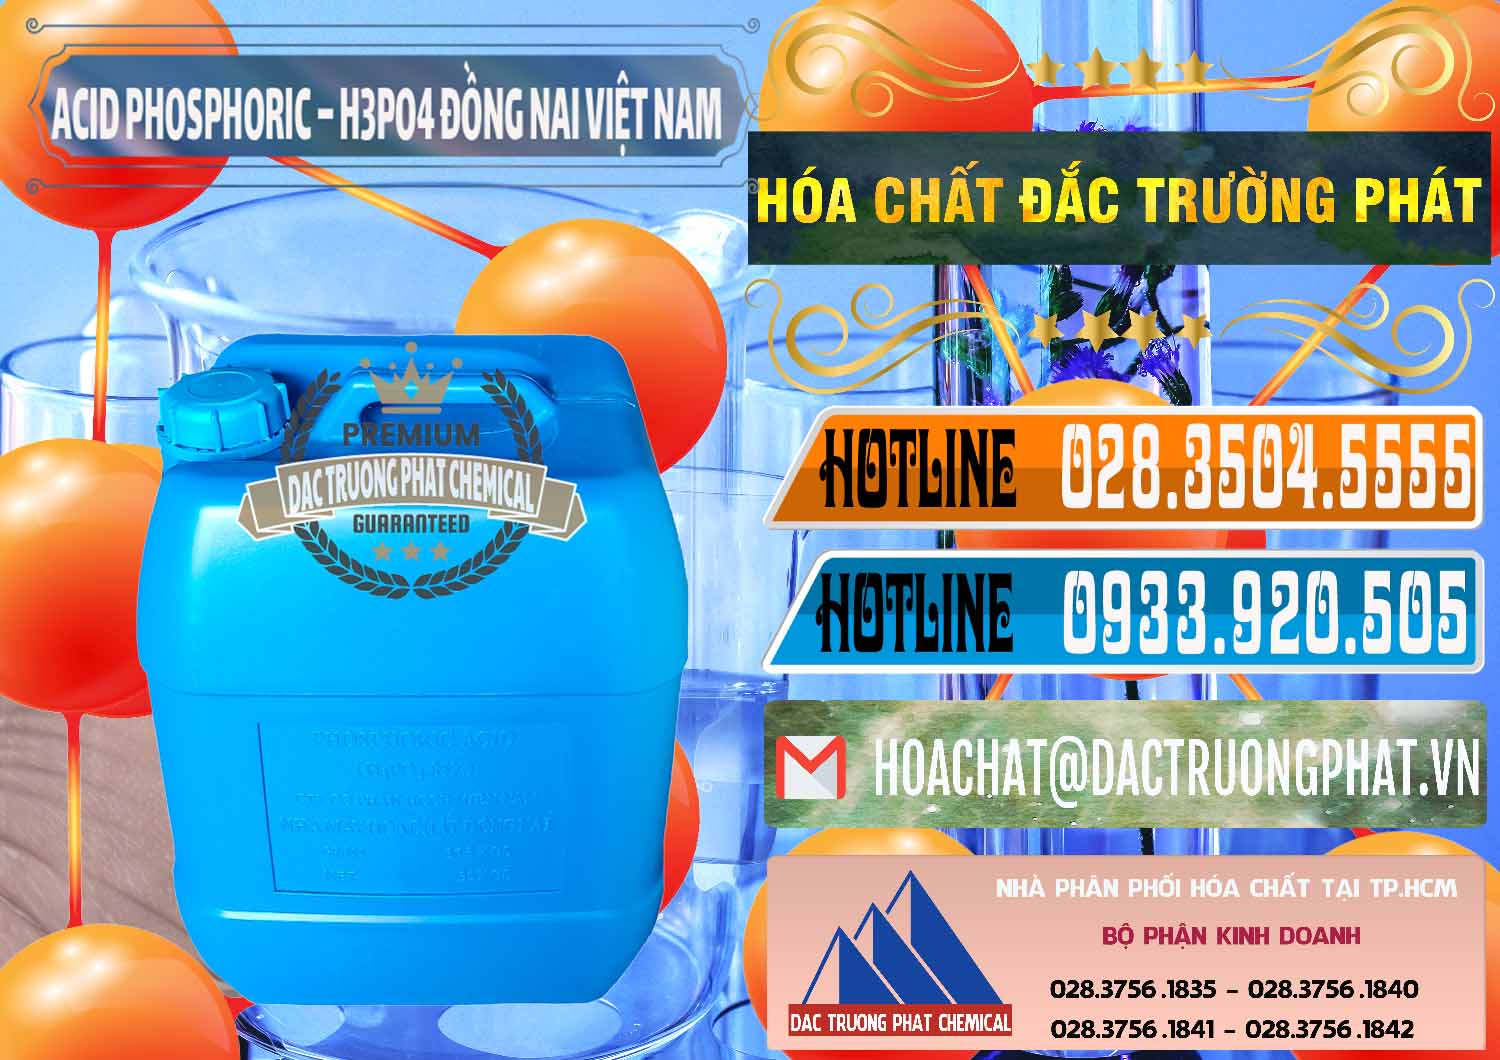 Nơi bán và cung cấp Acid Phosphoric – Axit Phosphoric 85% Đồng Nai Việt Nam - 0183 - Cty chuyên phân phối _ cung ứng hóa chất tại TP.HCM - stmp.net